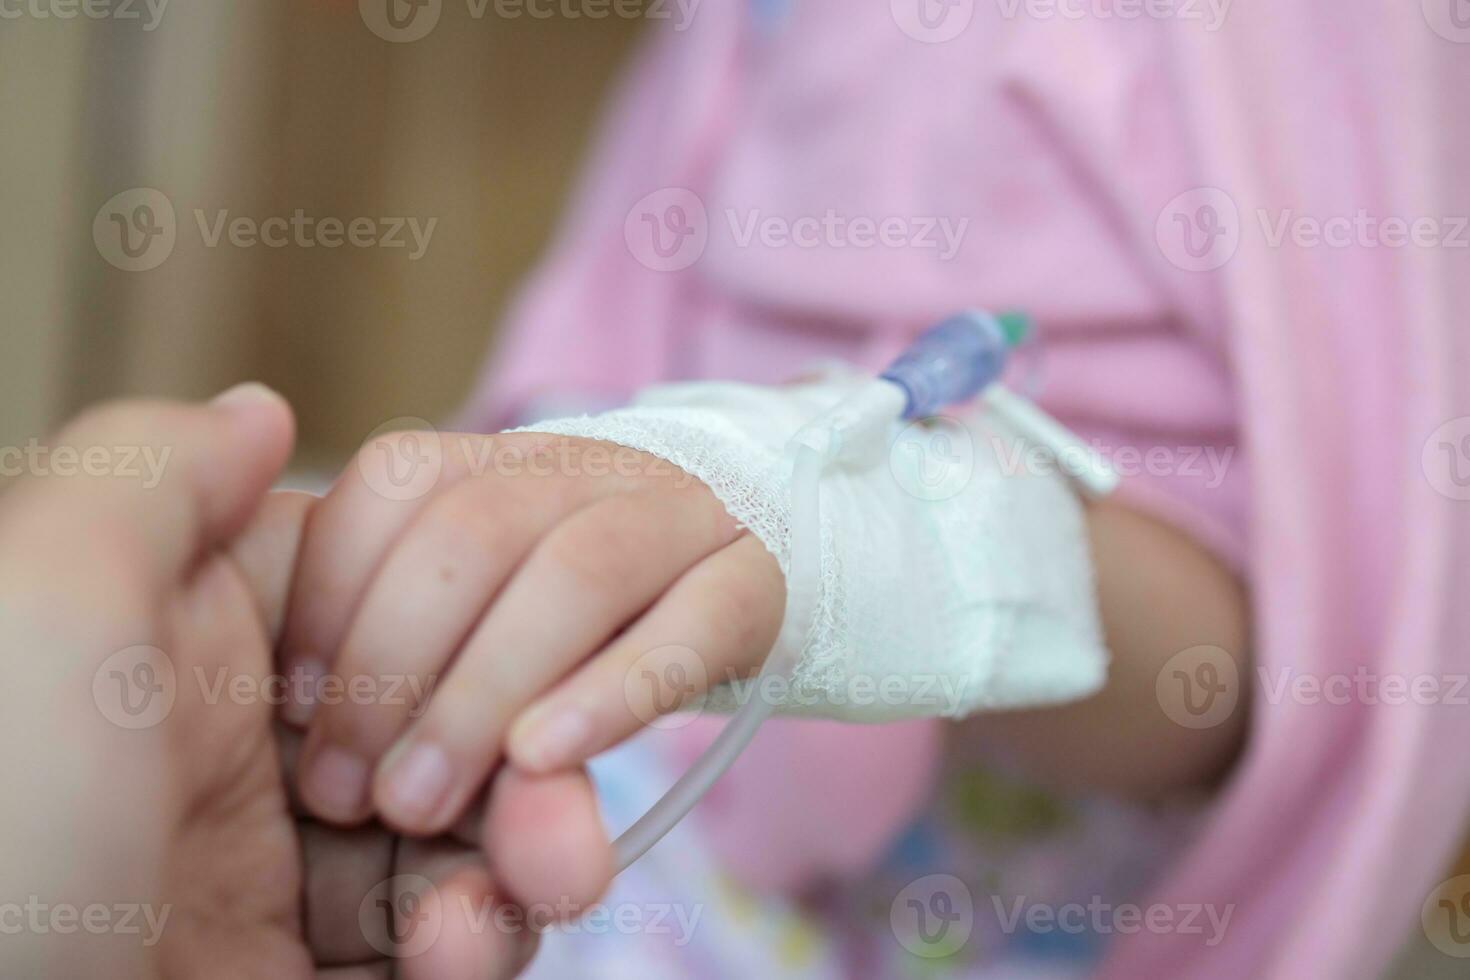 moeder Holding kind hand- met zoutoplossing iv oplossing in ziekenhuis foto